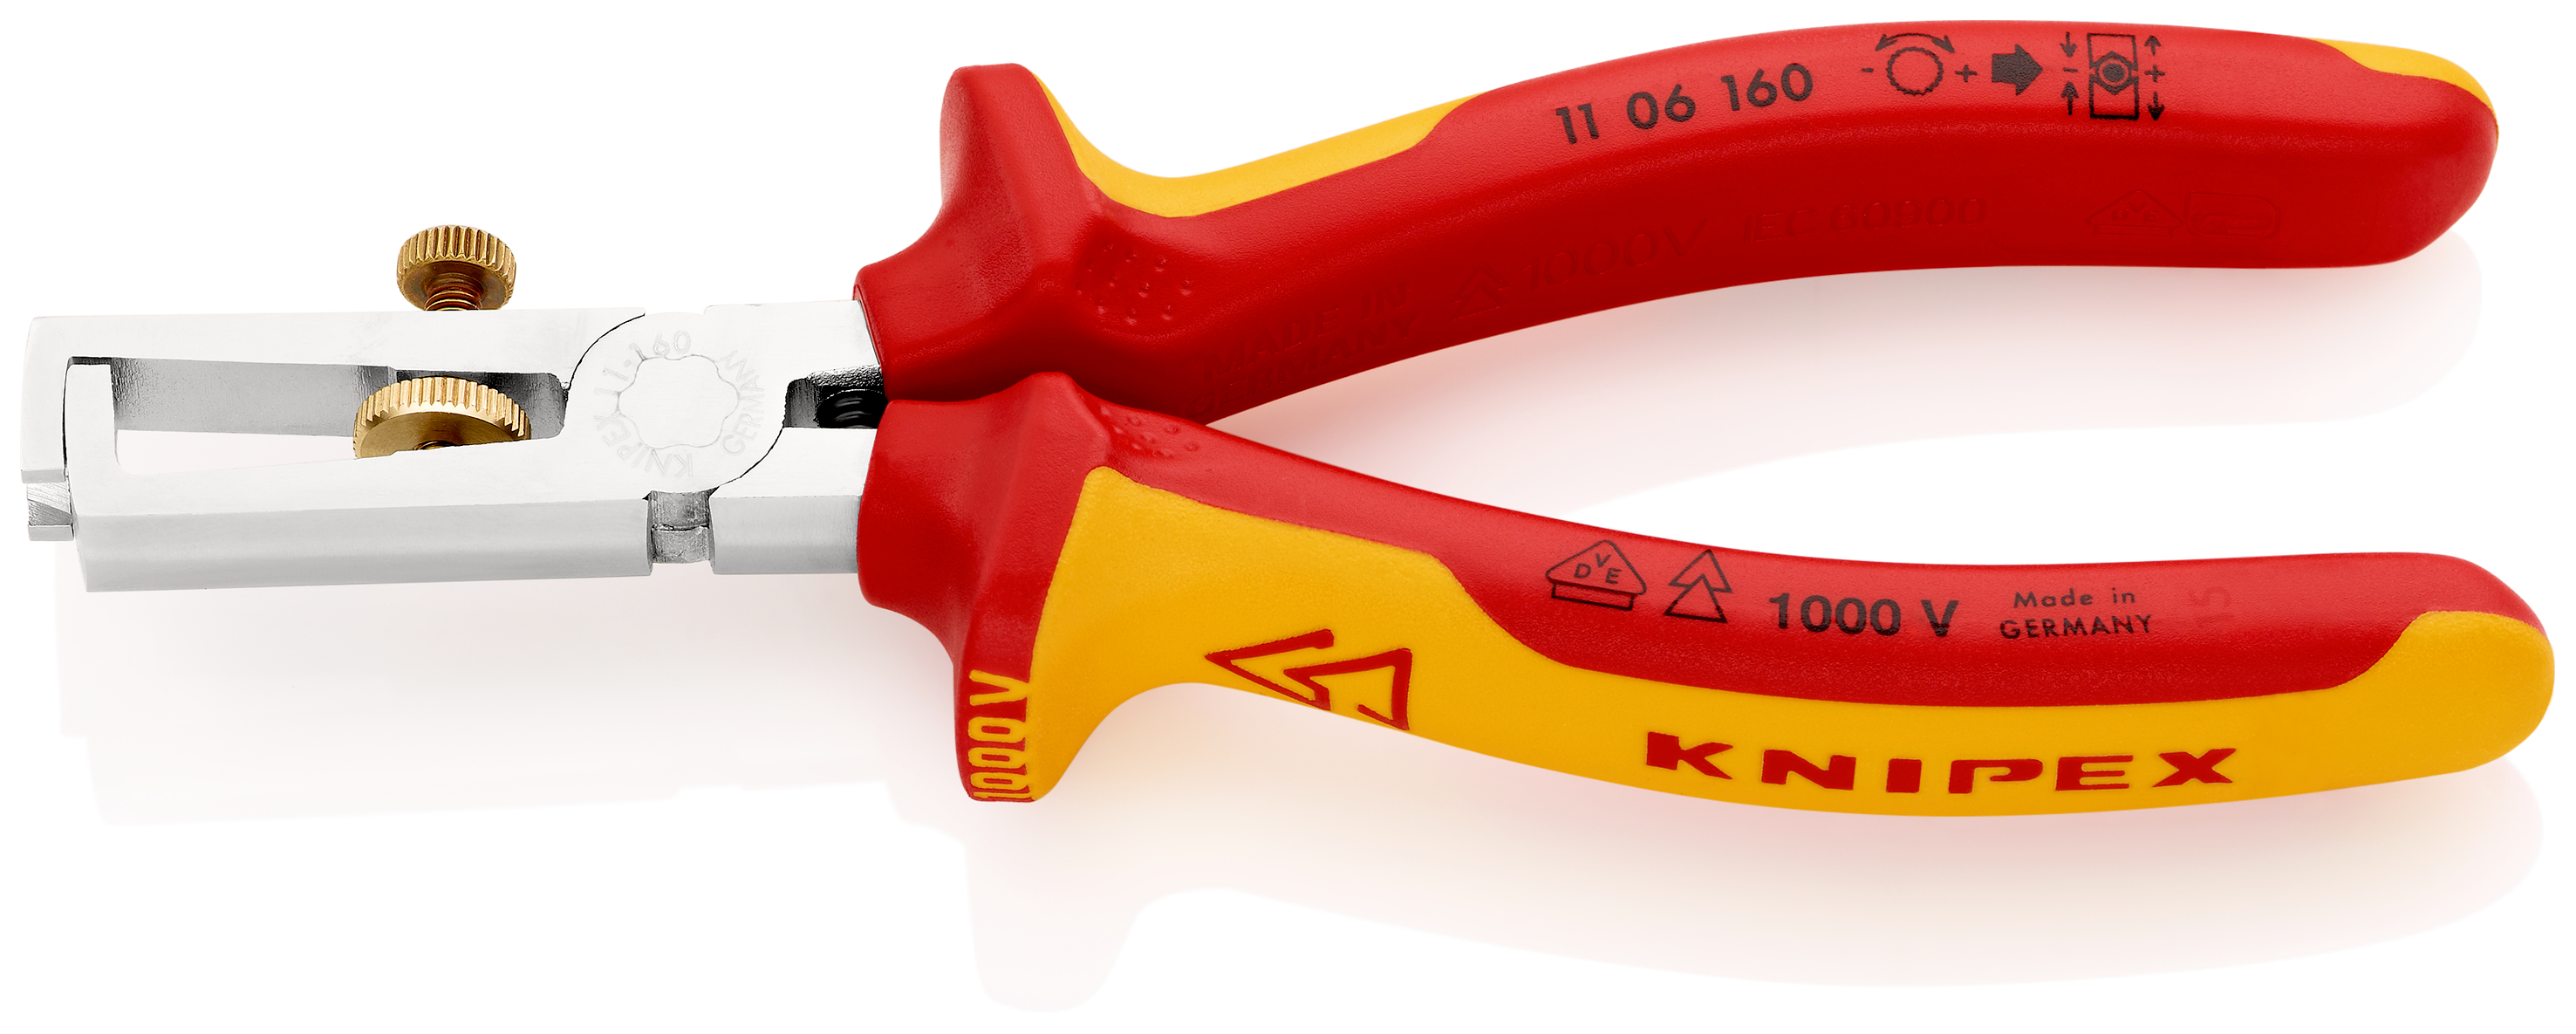 Knipex 1106160 Cleste dezizolator cu arc de deschidere cu manere multicomponent, testate VDE, lungime 160 mm